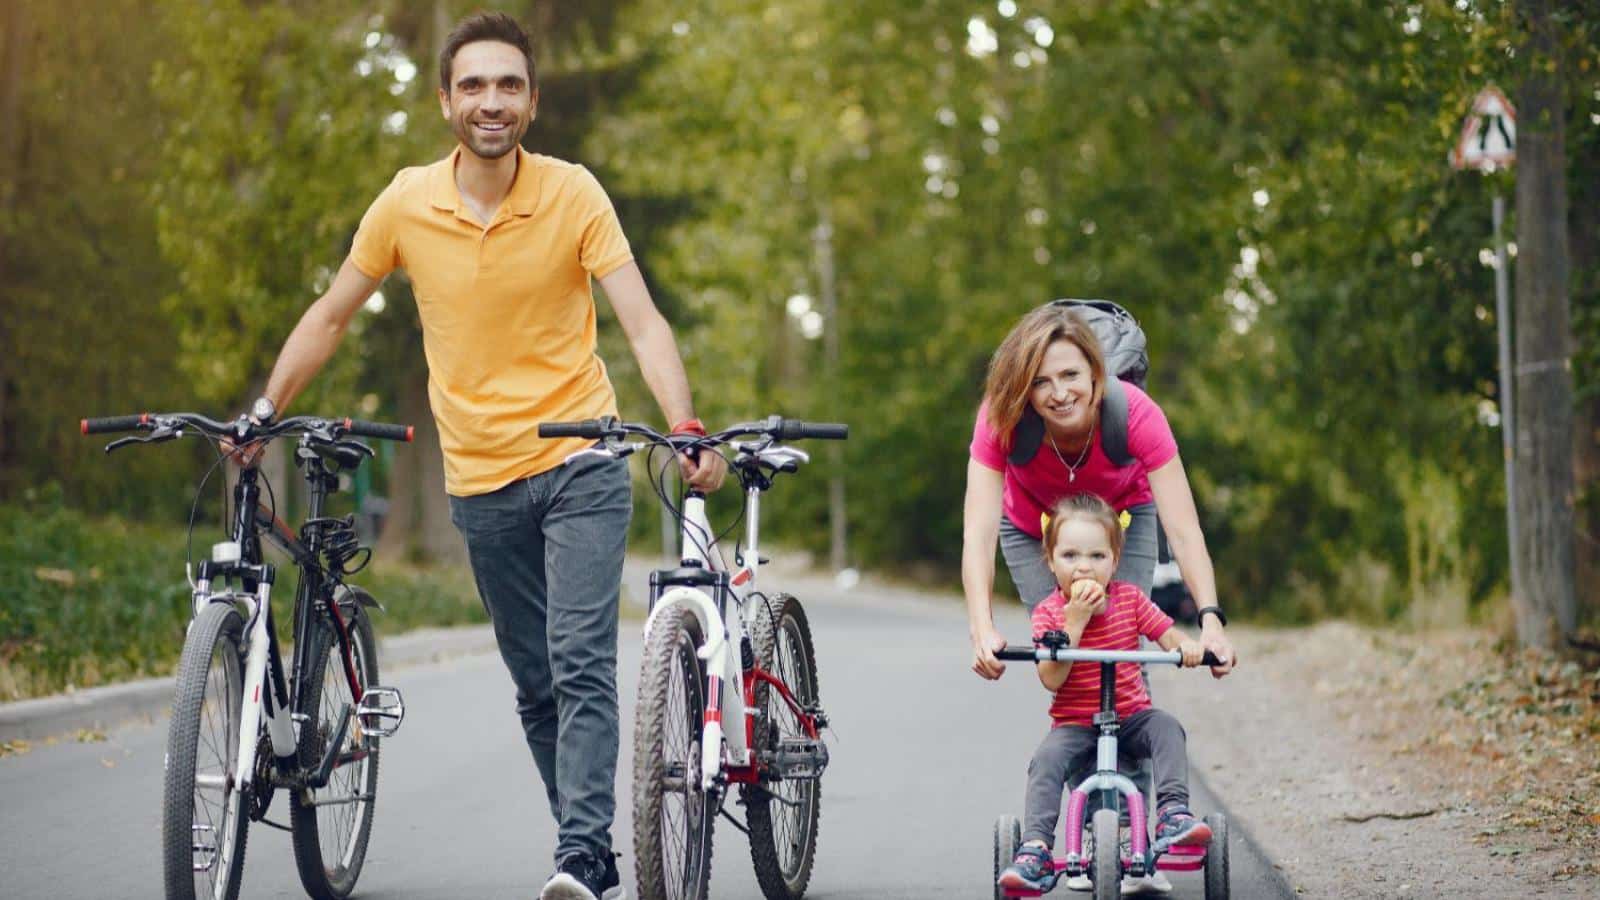 Велосемья. Семья на велосипедах. Семейный велосипед. Семейная фотосессия на велосипедах. Дети с велосипедом.